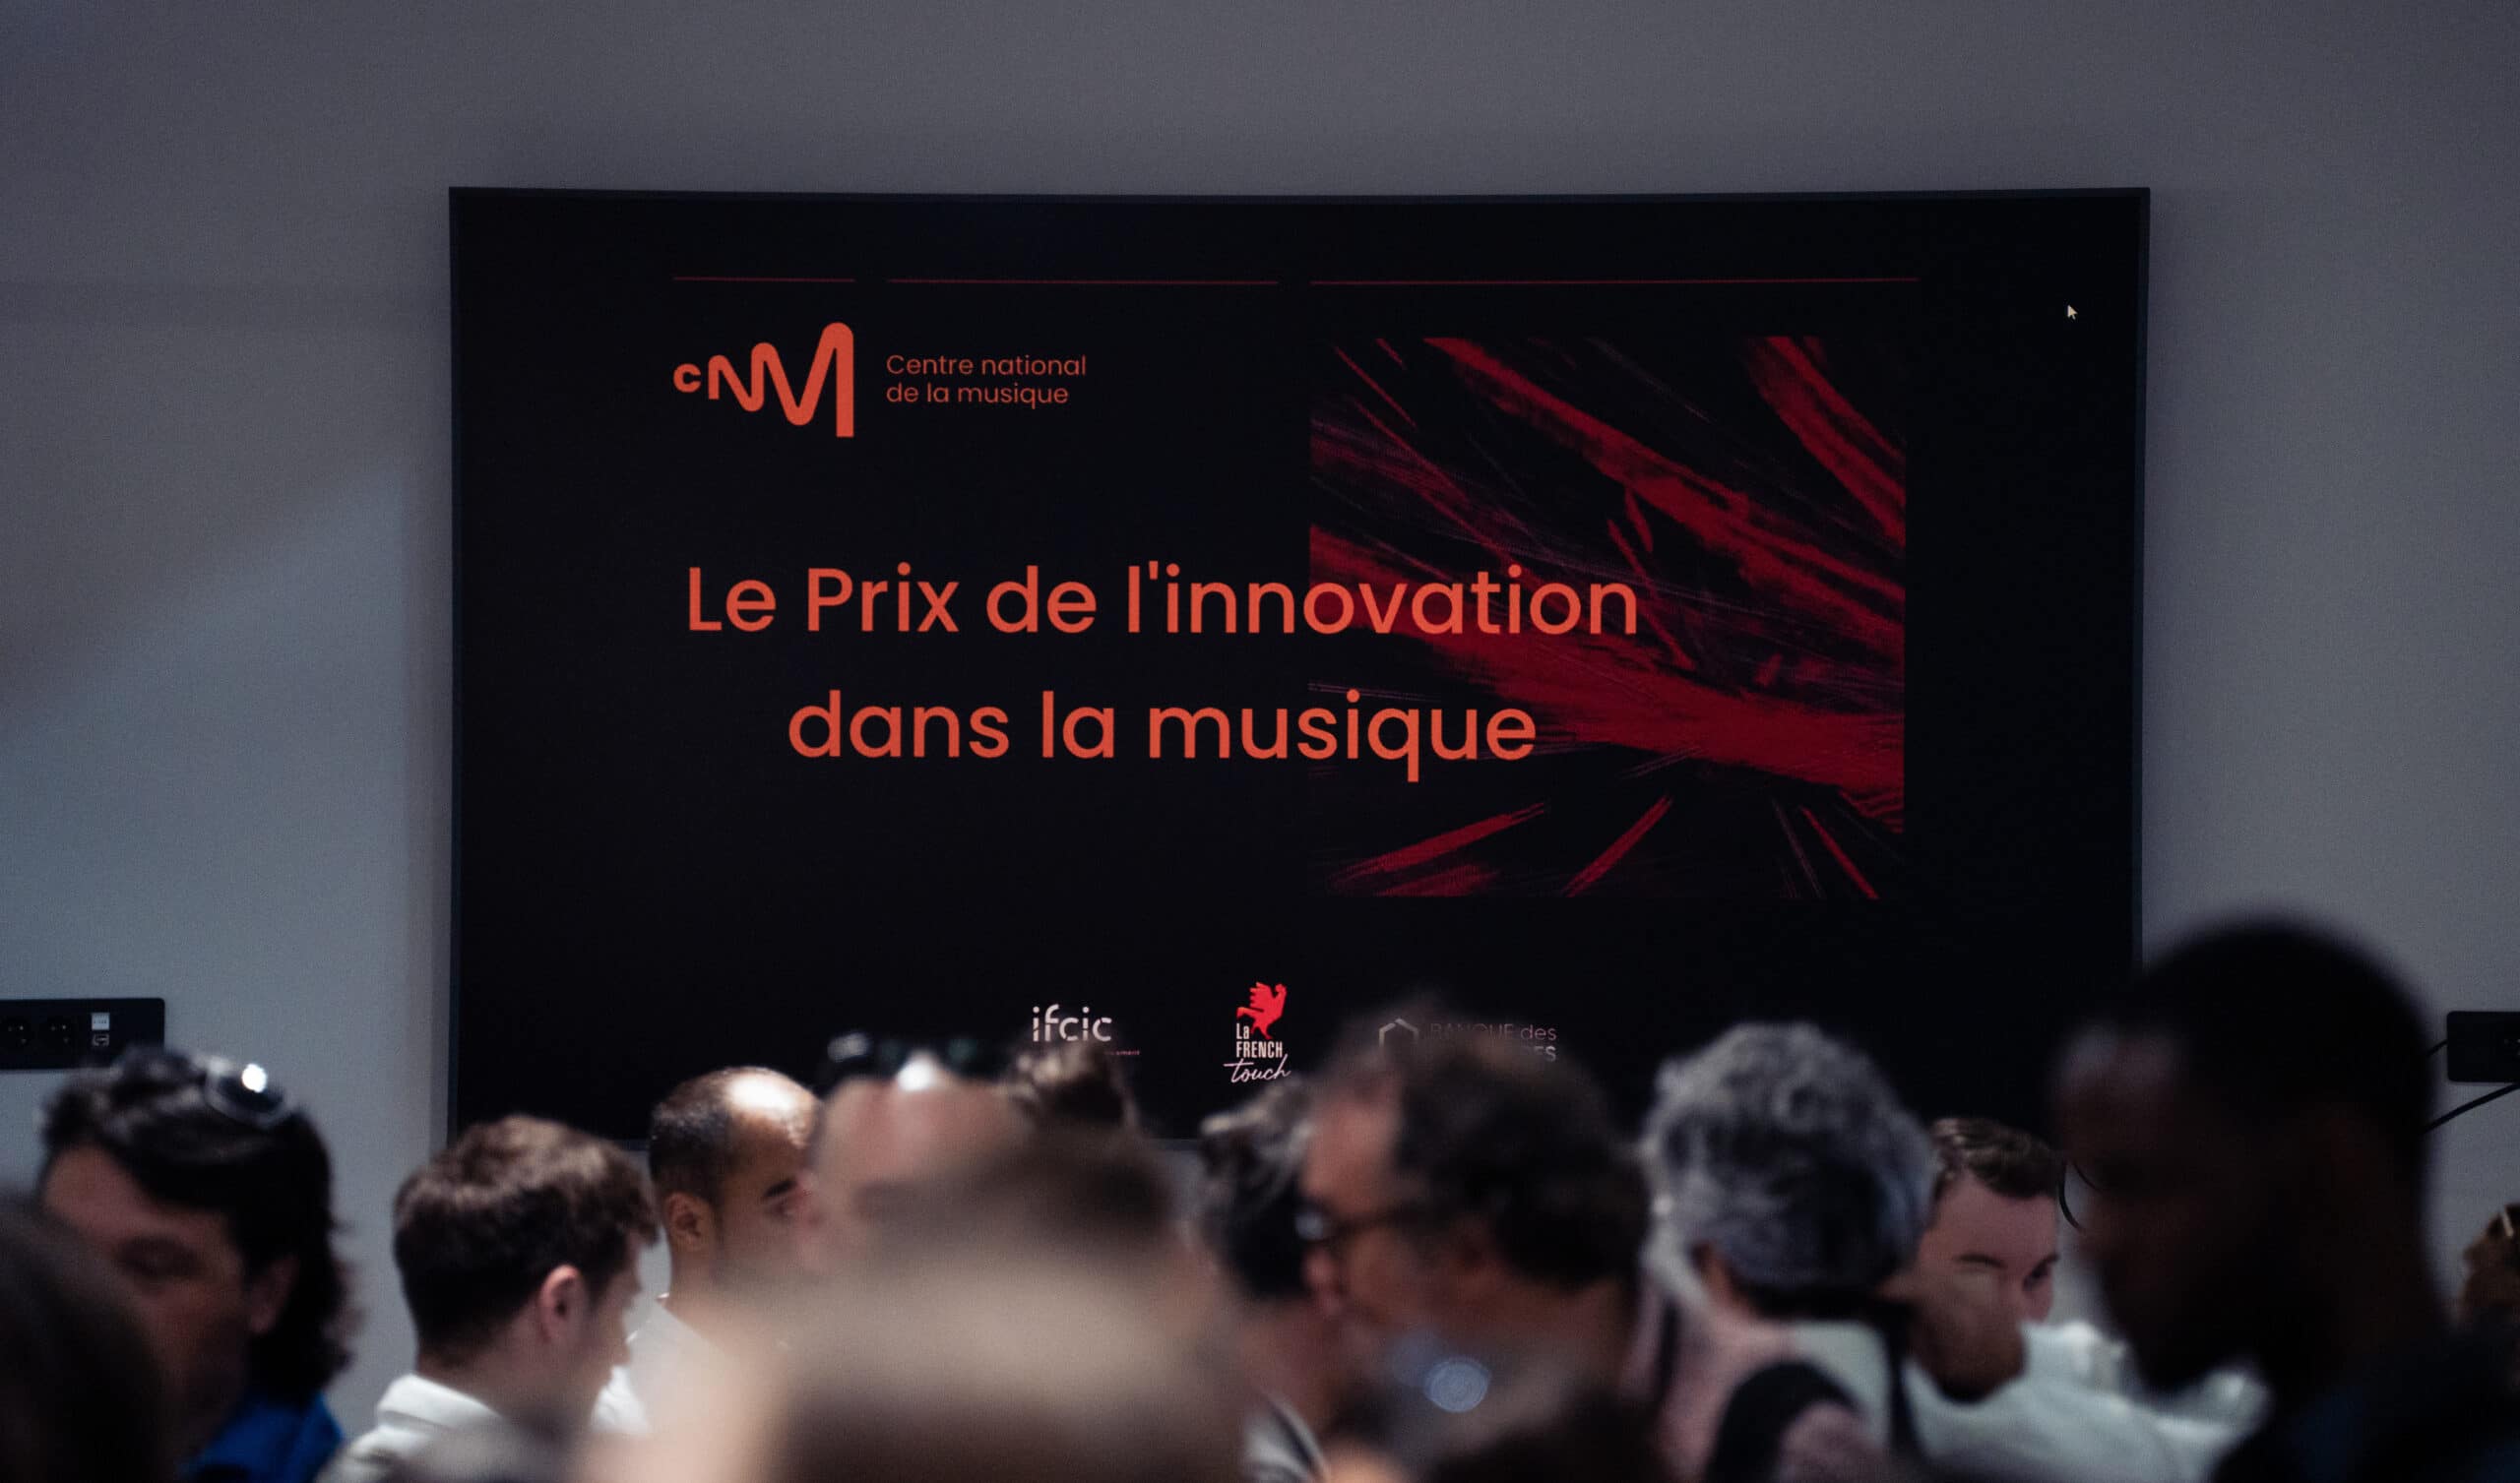 Le CNM a remis pour la première fois le Prix de l’innovation dans la musique à 3 structures innovantes